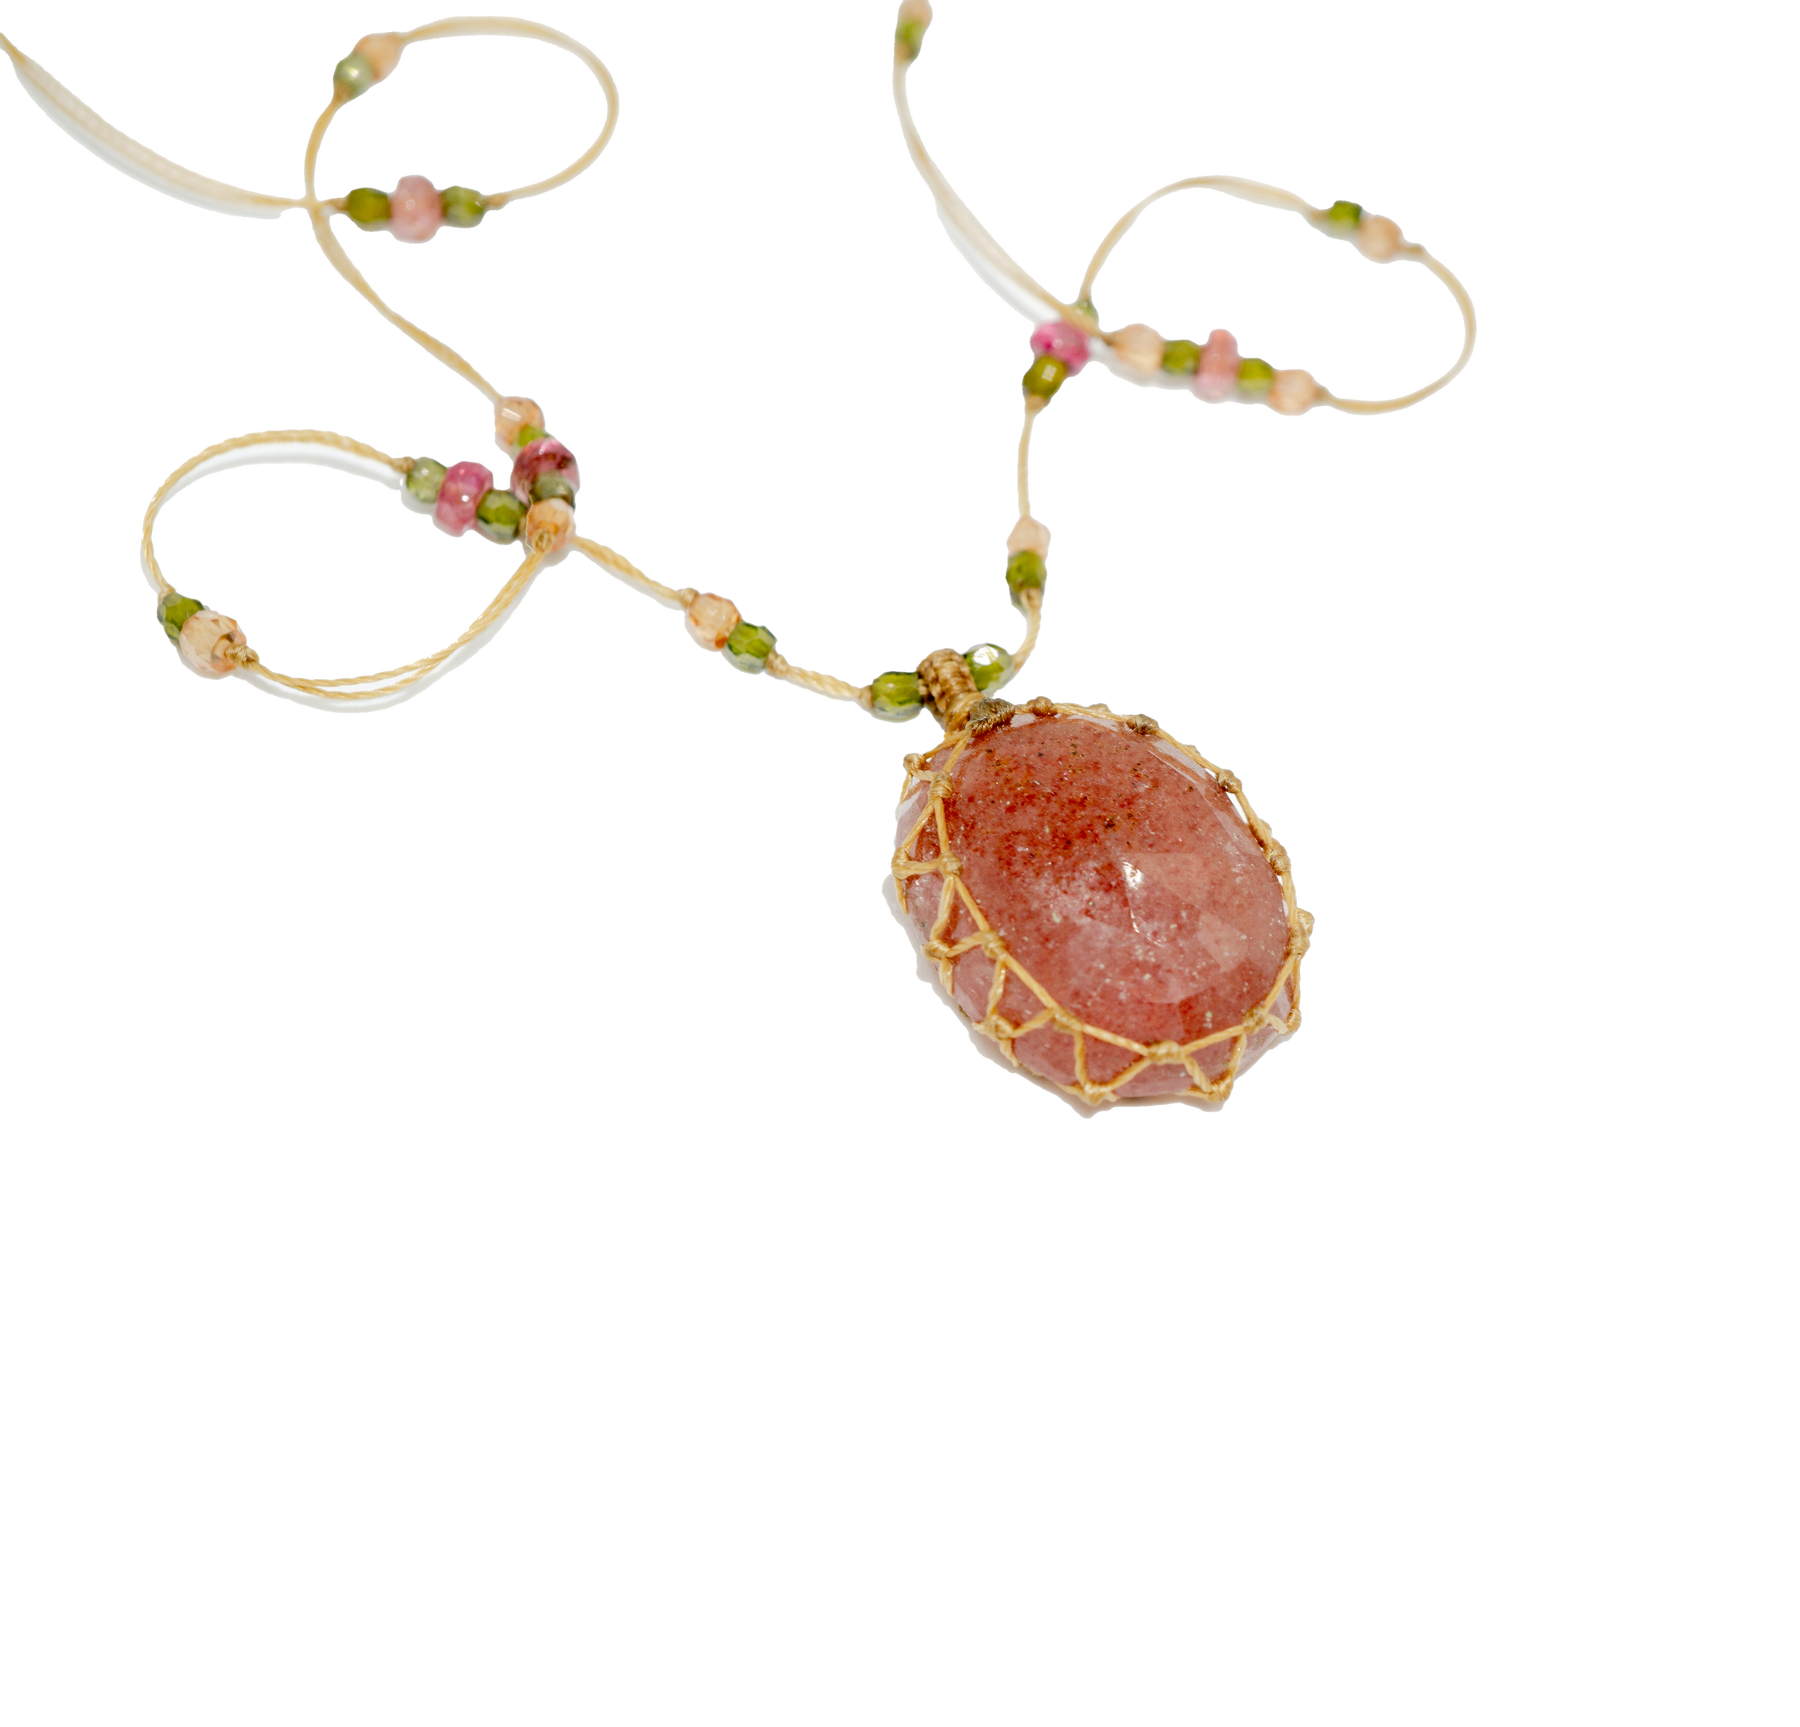 Tibetan Short Necklace - Strawberry Rose Quartz - Mix Pink Tourmaline - Beige Thread